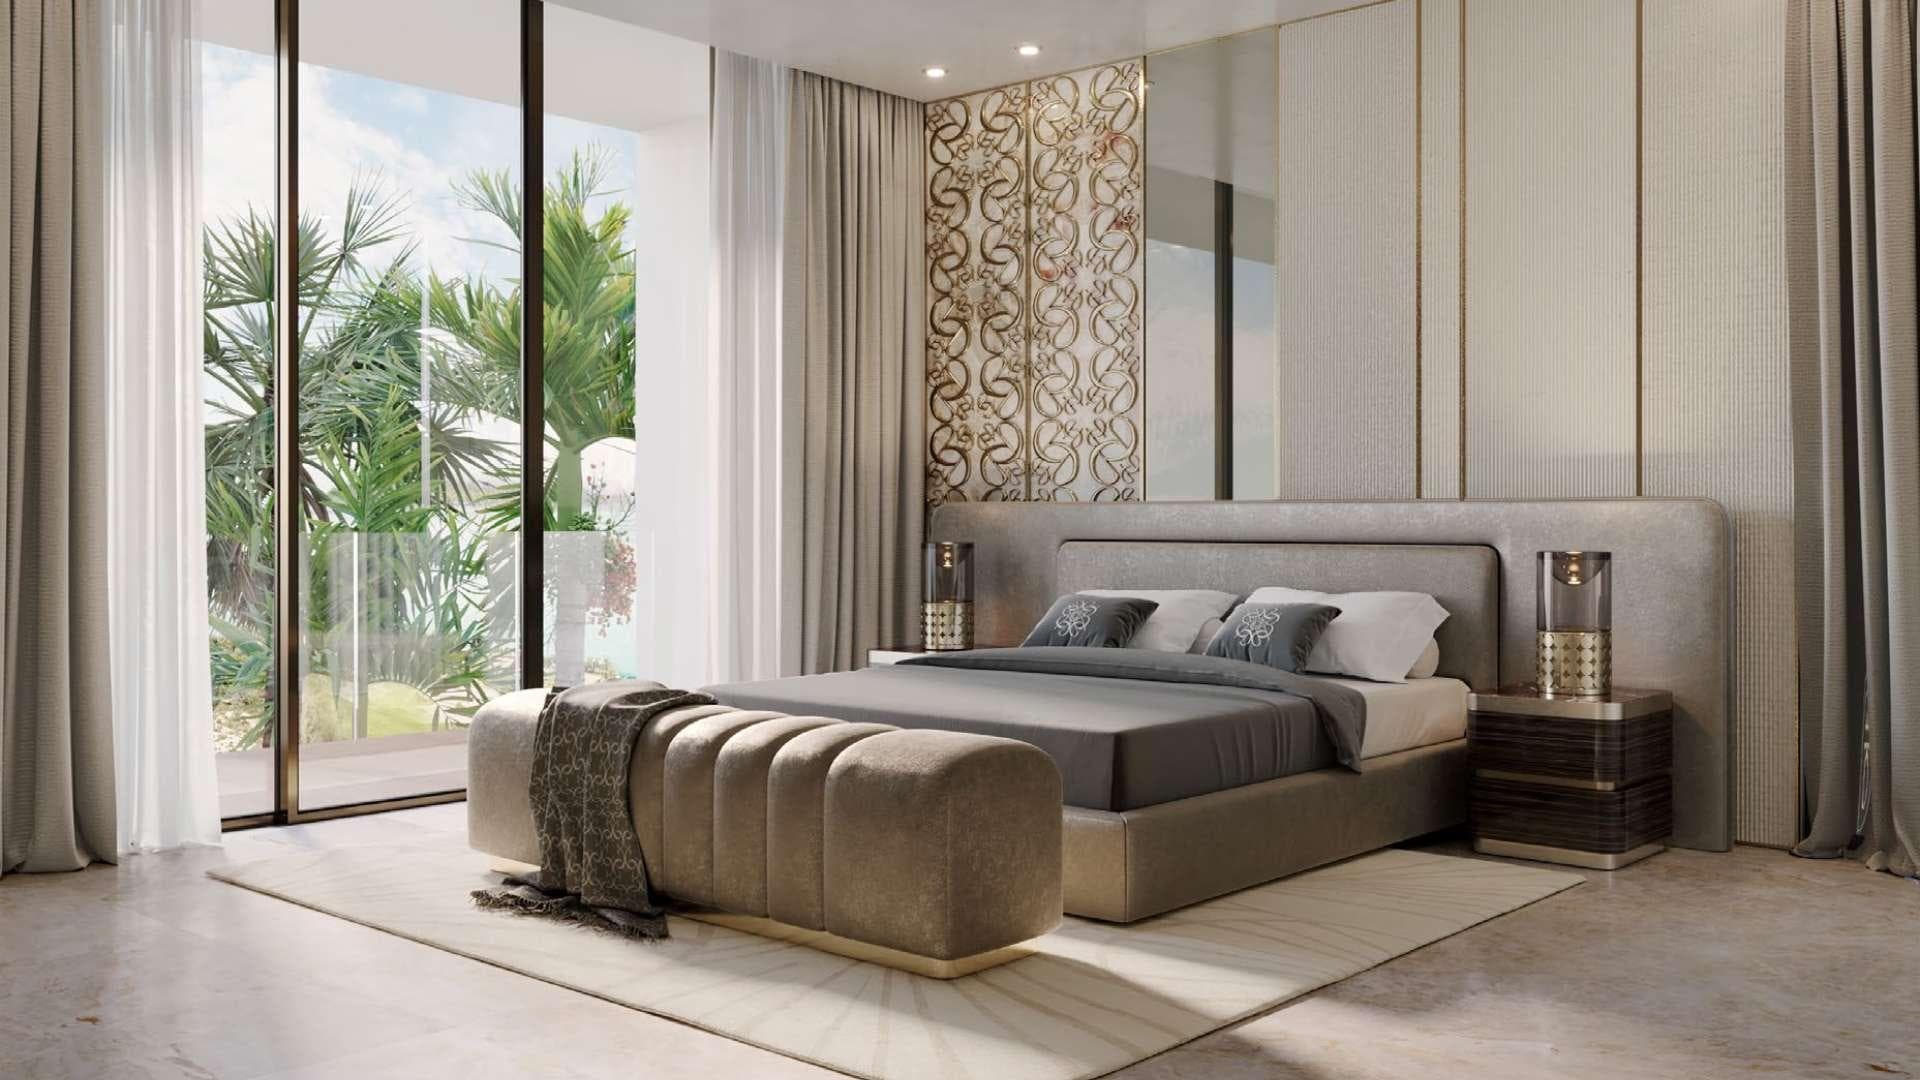 5 Bedroom Villa For Sale Palm Hills Lp20531 2a297130de2f3a00.jpg